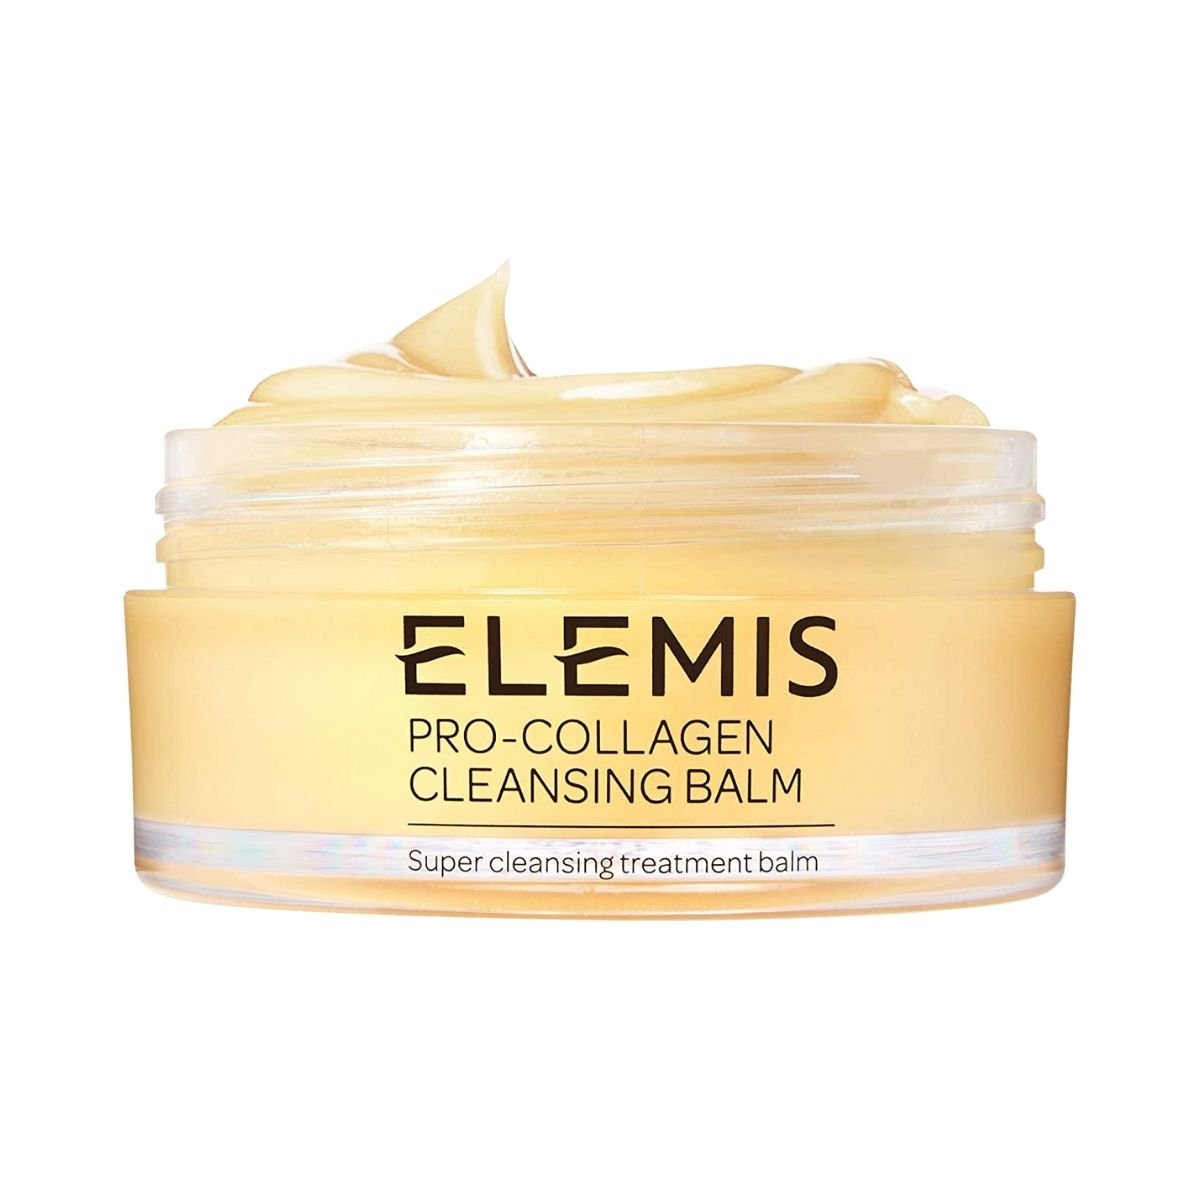 Elemis Pro-Collagen Cleansing Balm - SkincareEssentials